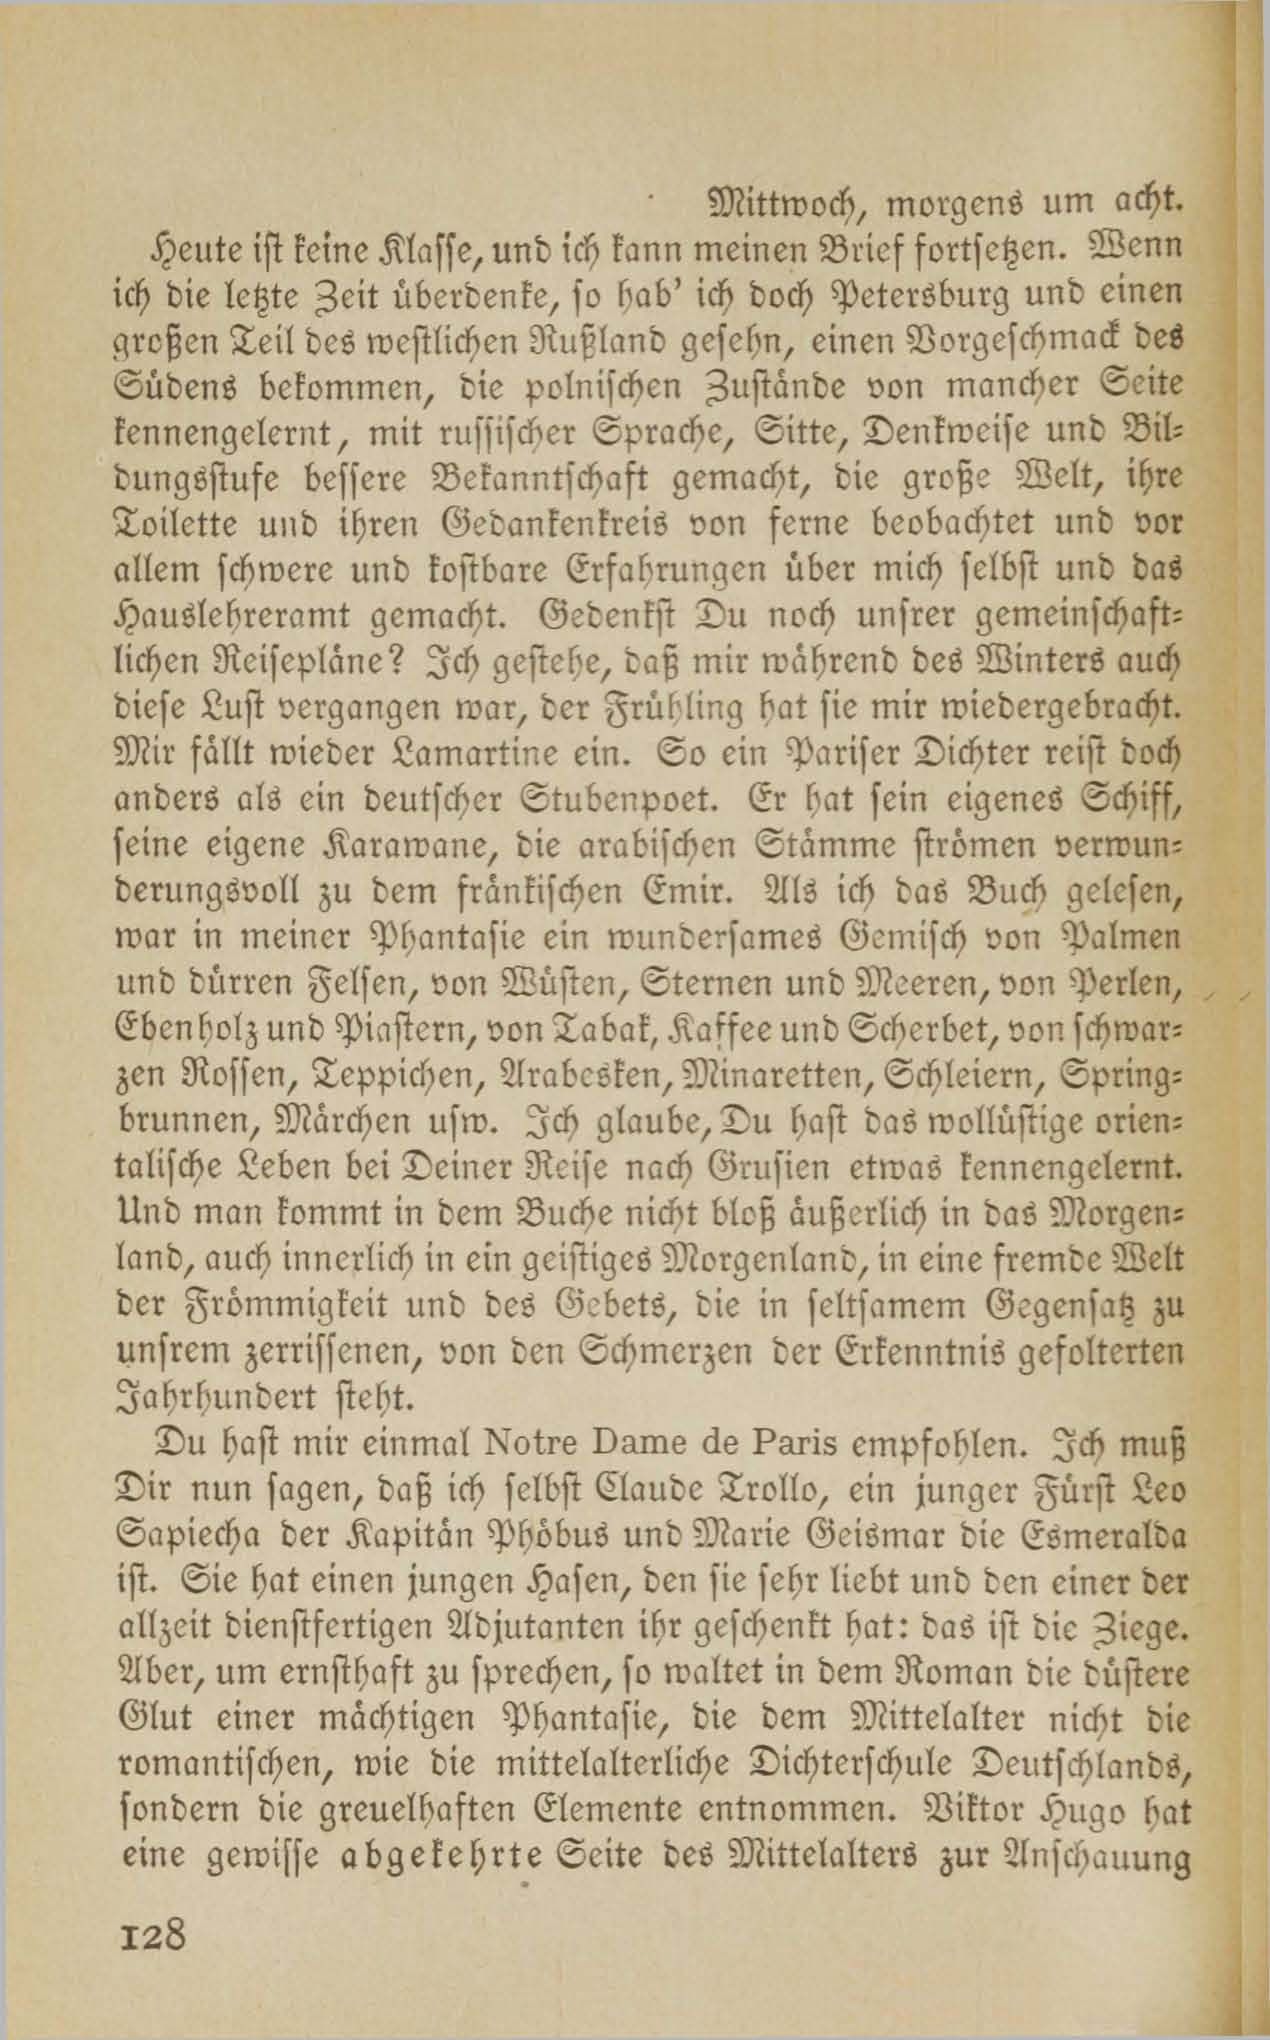 Lebensbetrachtungen eines Zweiundzwanzigjährigen (1917 ?) | 3. (128) Main body of text